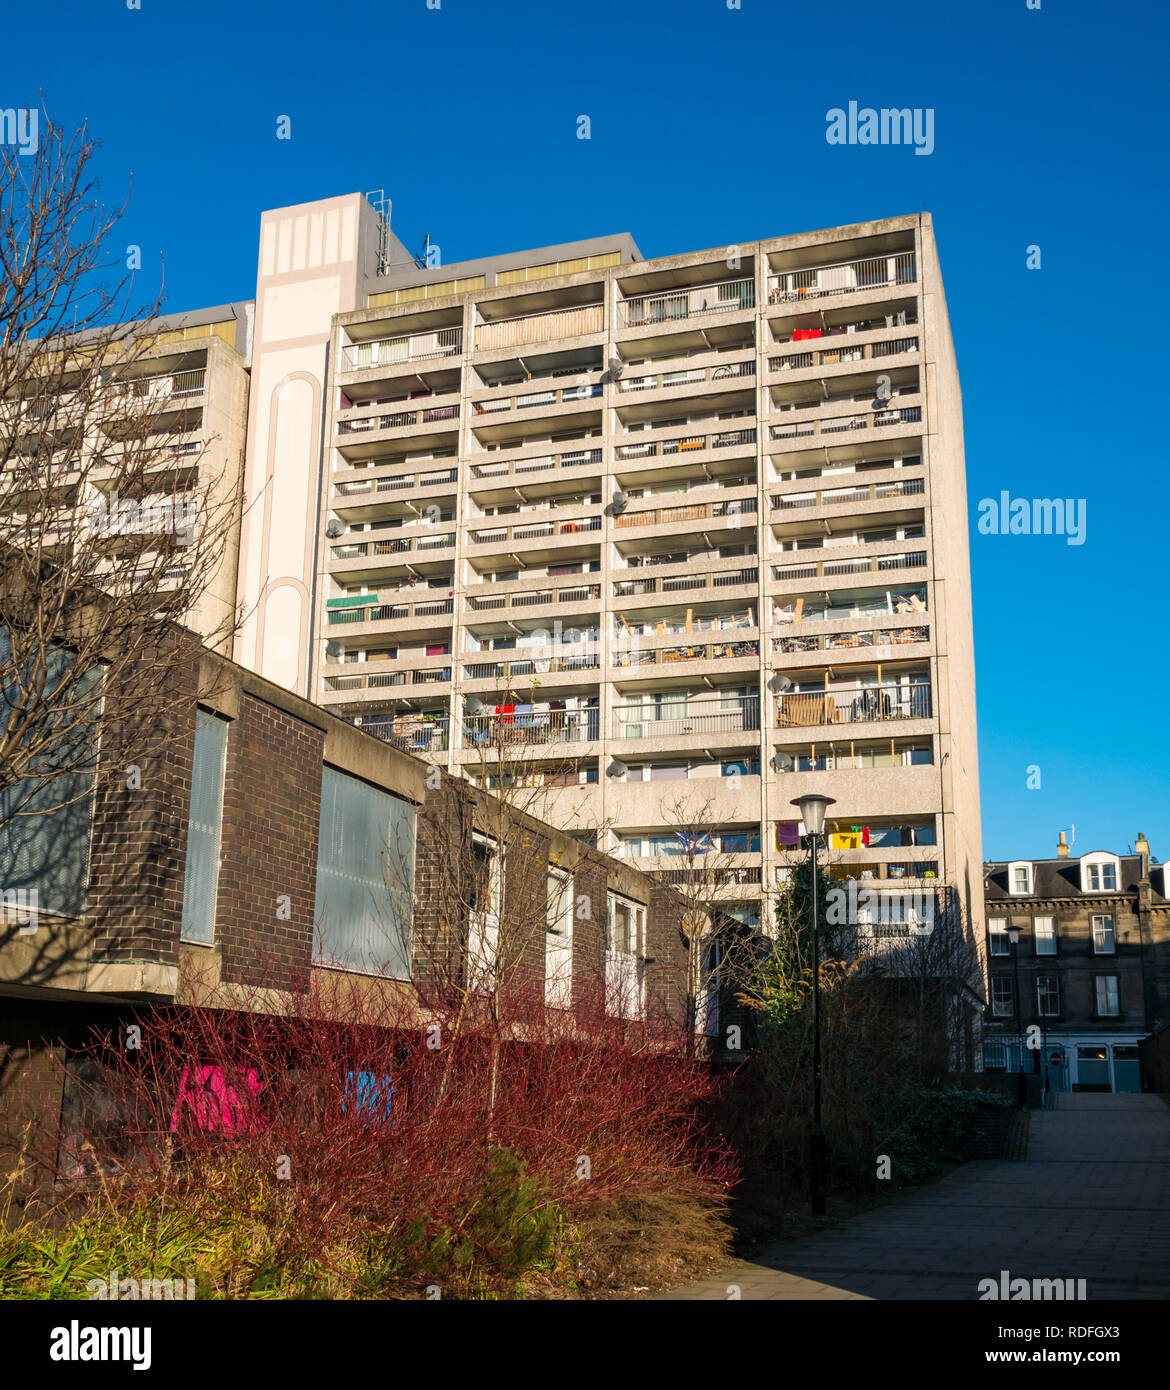 An Bord Windows, Linkskalender anzeigen Haus, 1960er Jahre Rat für den sozialen Wohnungsbau Beton Hochhaus, Leith, Edinburgh, Schottland, Großbritannien Stockfoto